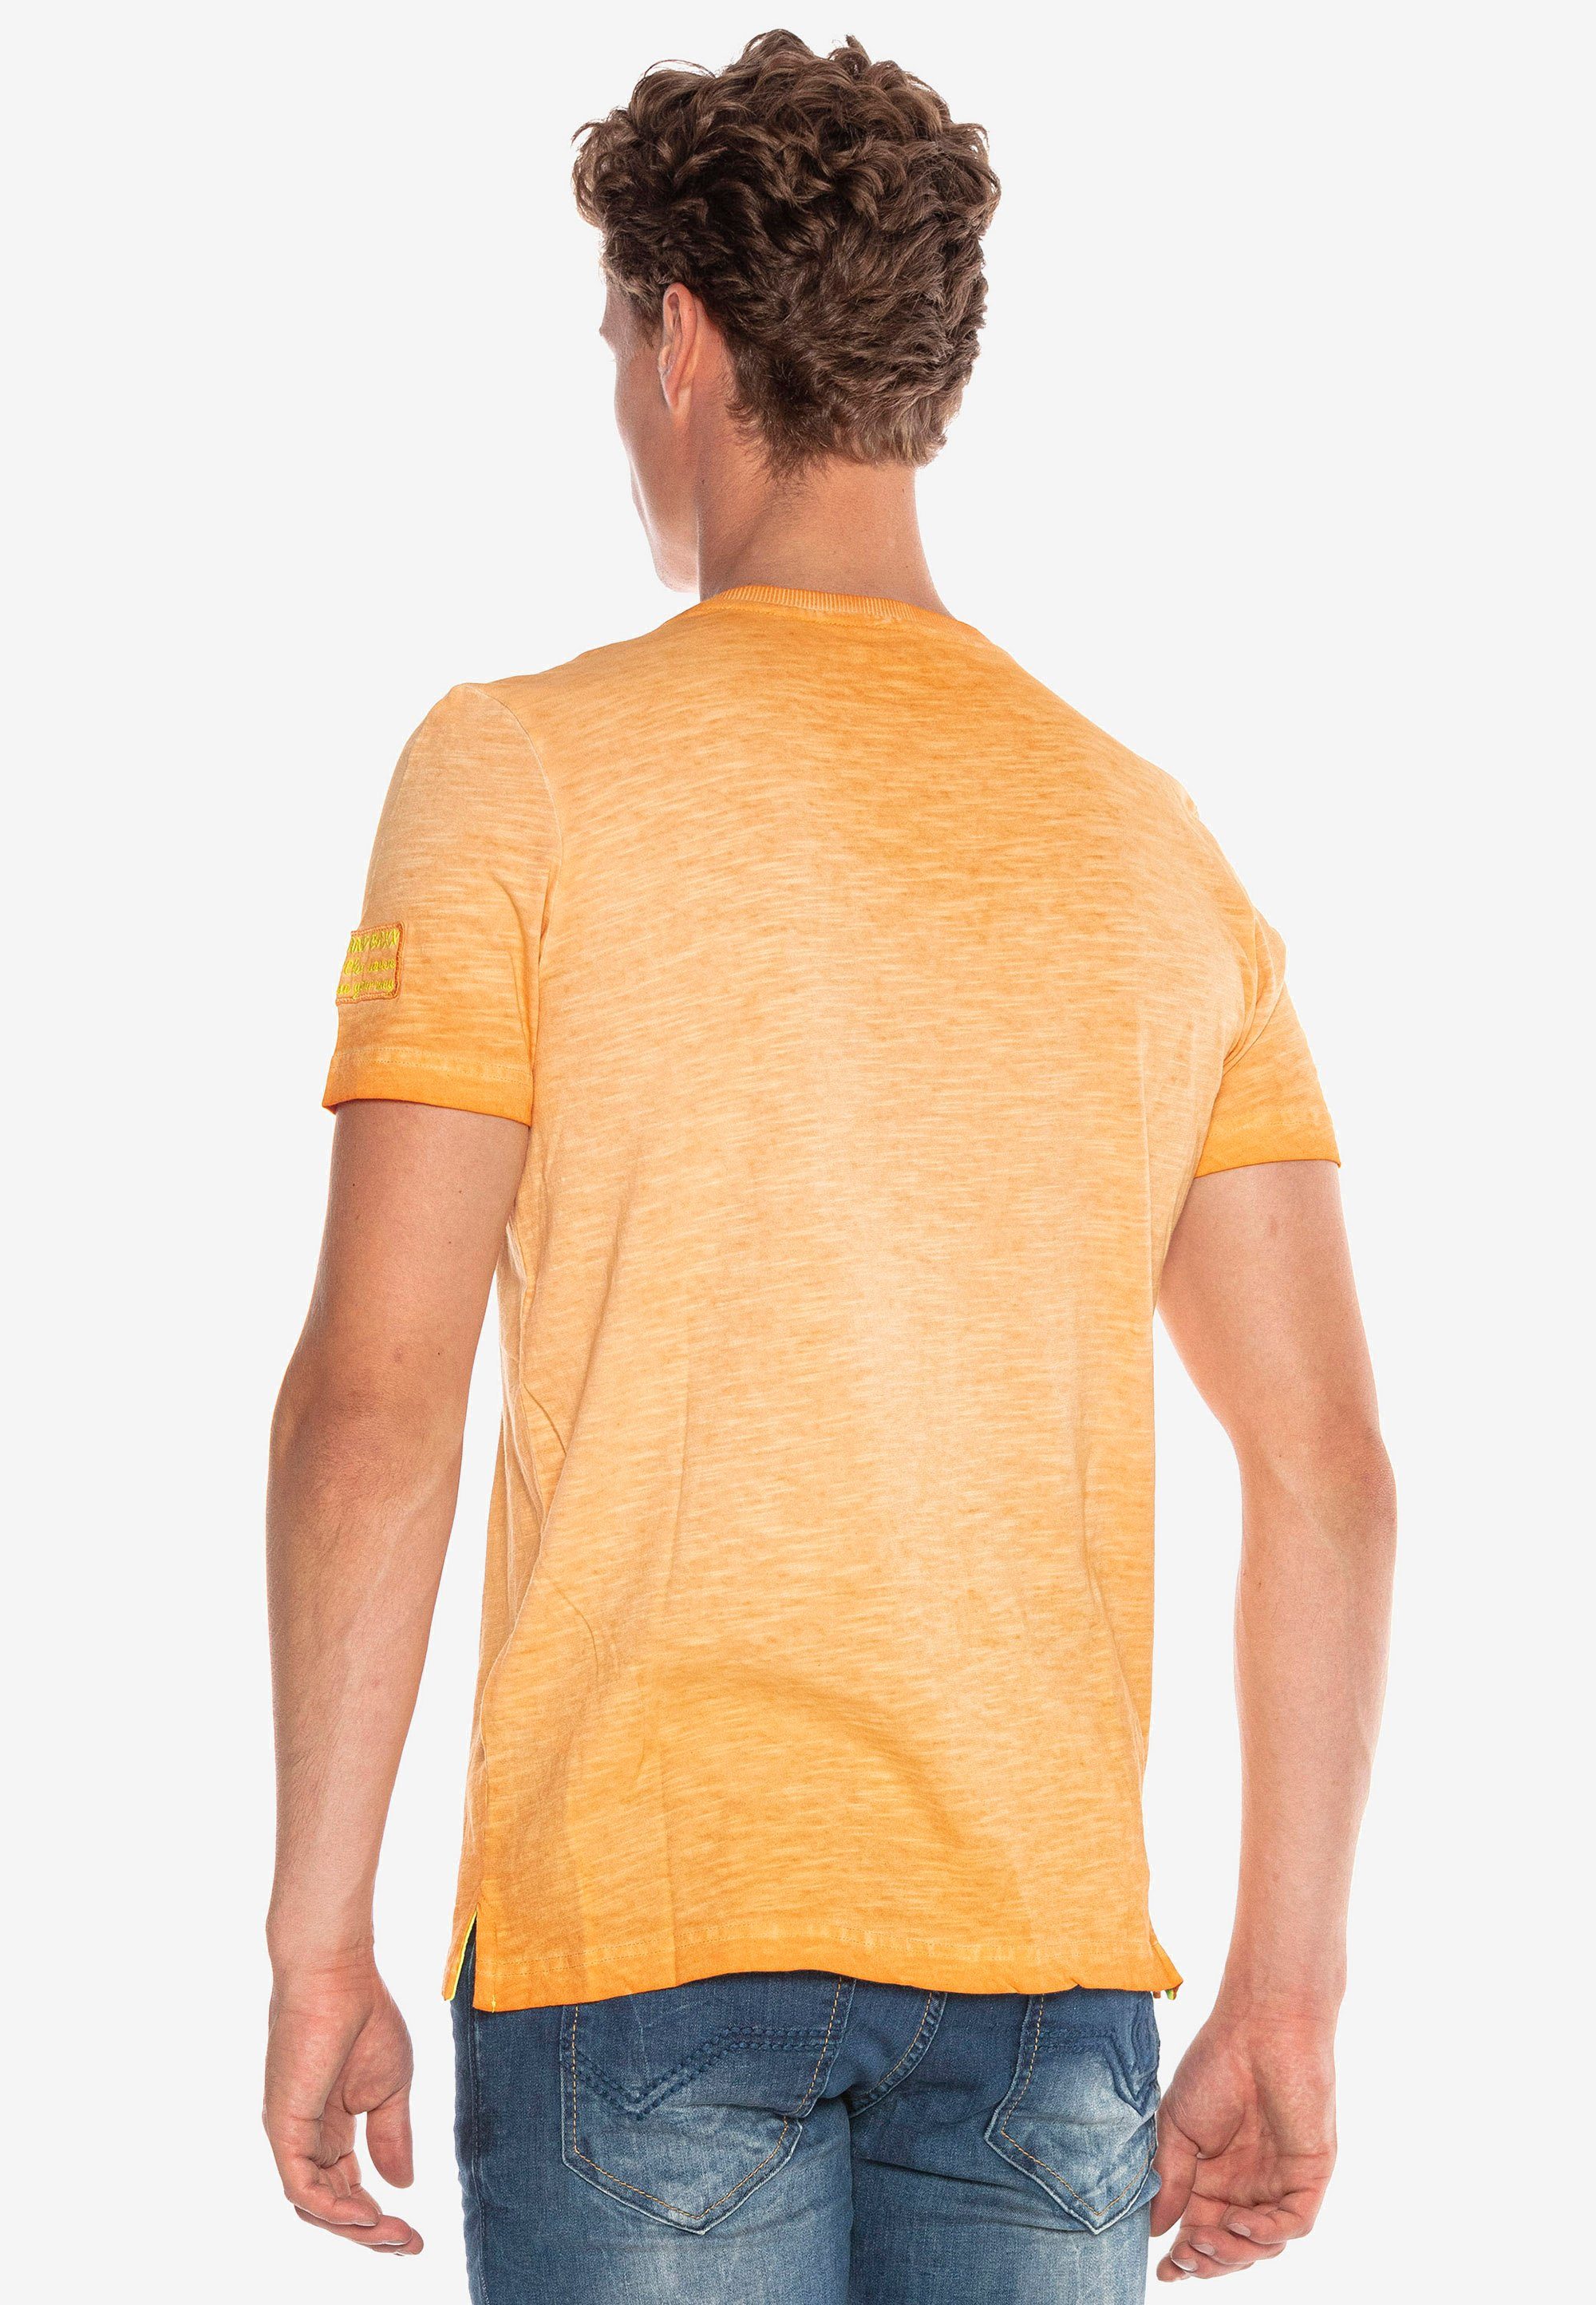 Logo-Patch kleinem & orange T-Shirt mit Baxx Cipo